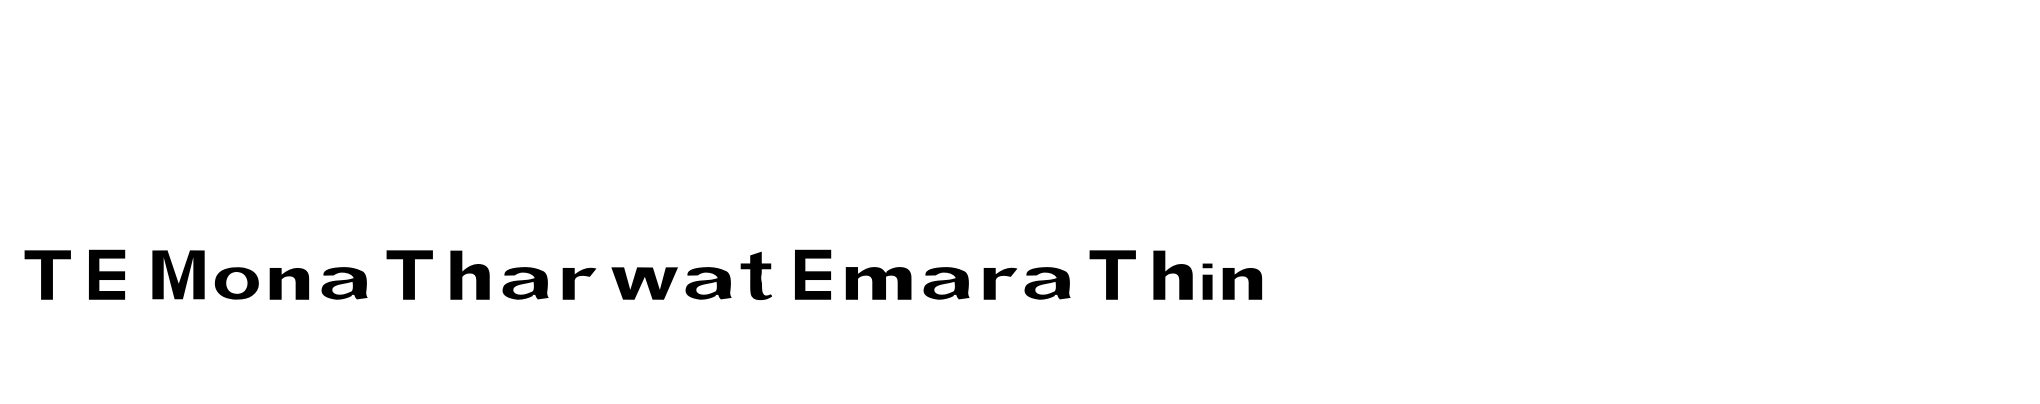 TE Mona Tharwat Emara Thin image